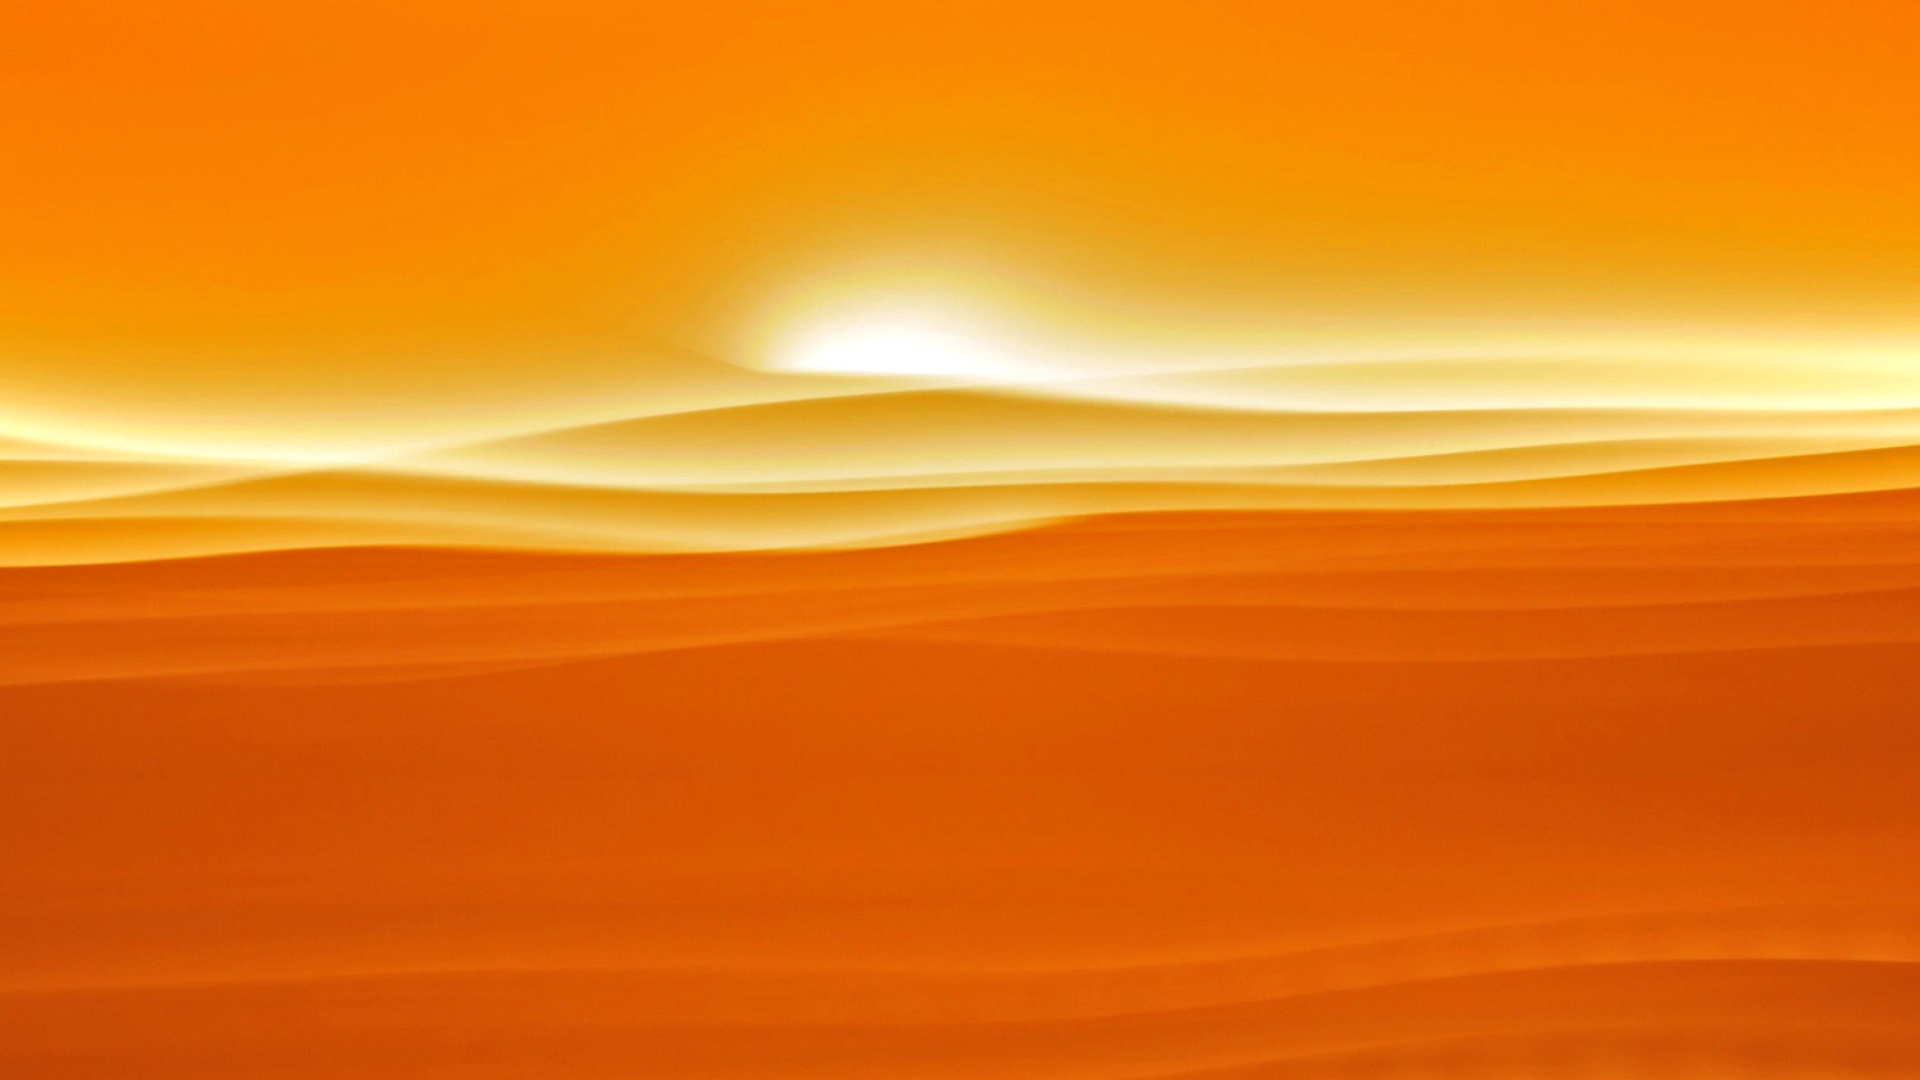 Orange Sky and Desert wallpaper 1920x1080